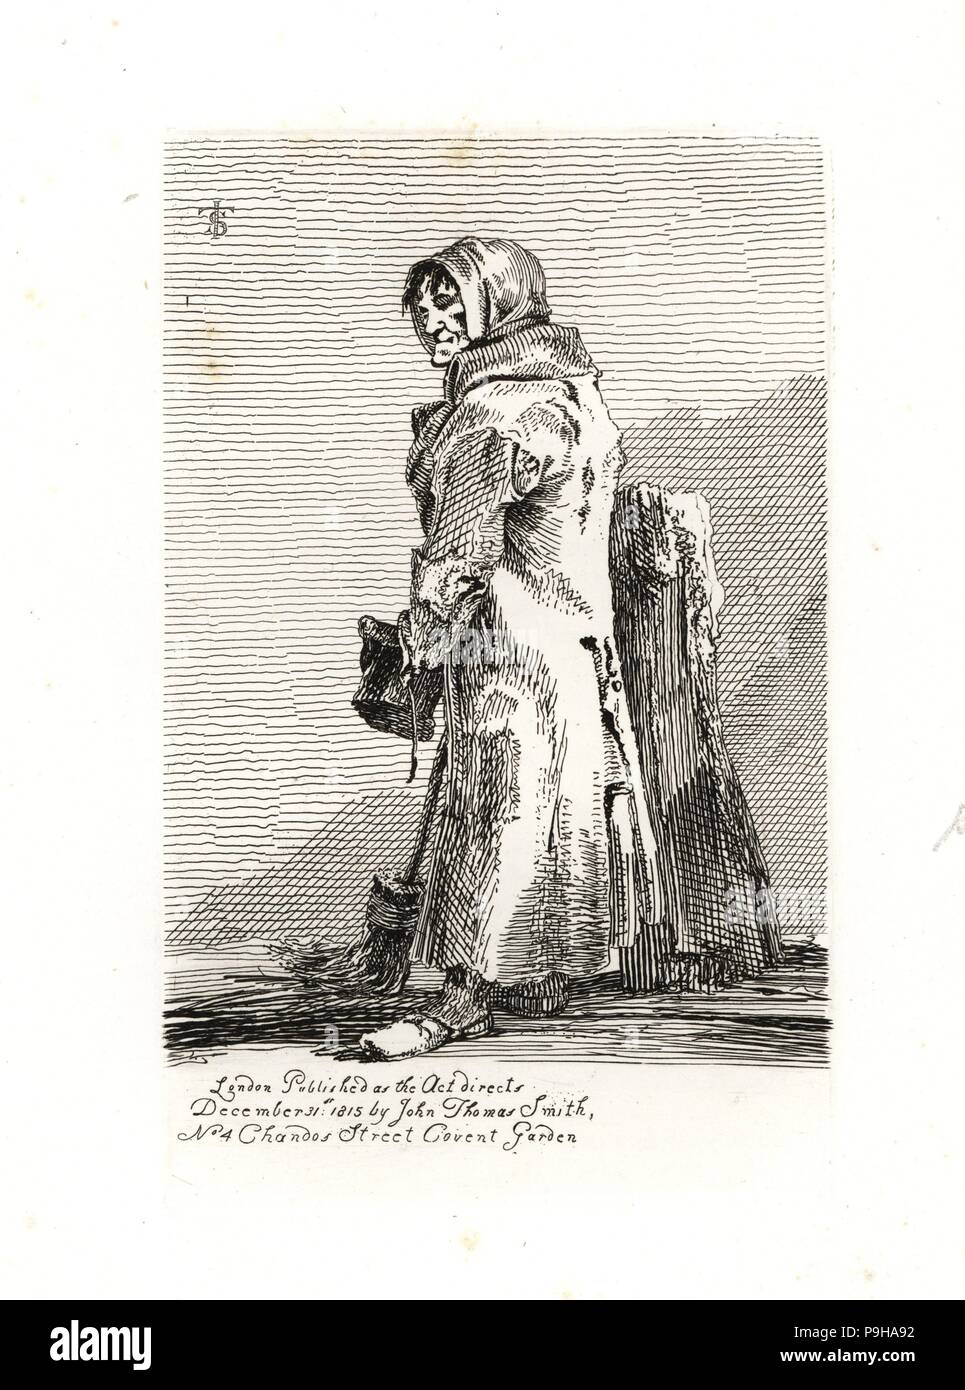 Kreuzung sweeper auf Ludgate Hill tragen ein Tuch auf den Kopf. Kupferstich und Radierung von John Thomas Smith aus seinem Vagabondiana, Anekdoten von bettelmönch Wanderers durch die Straßen von London, 1817 eingraviert. Stockfoto